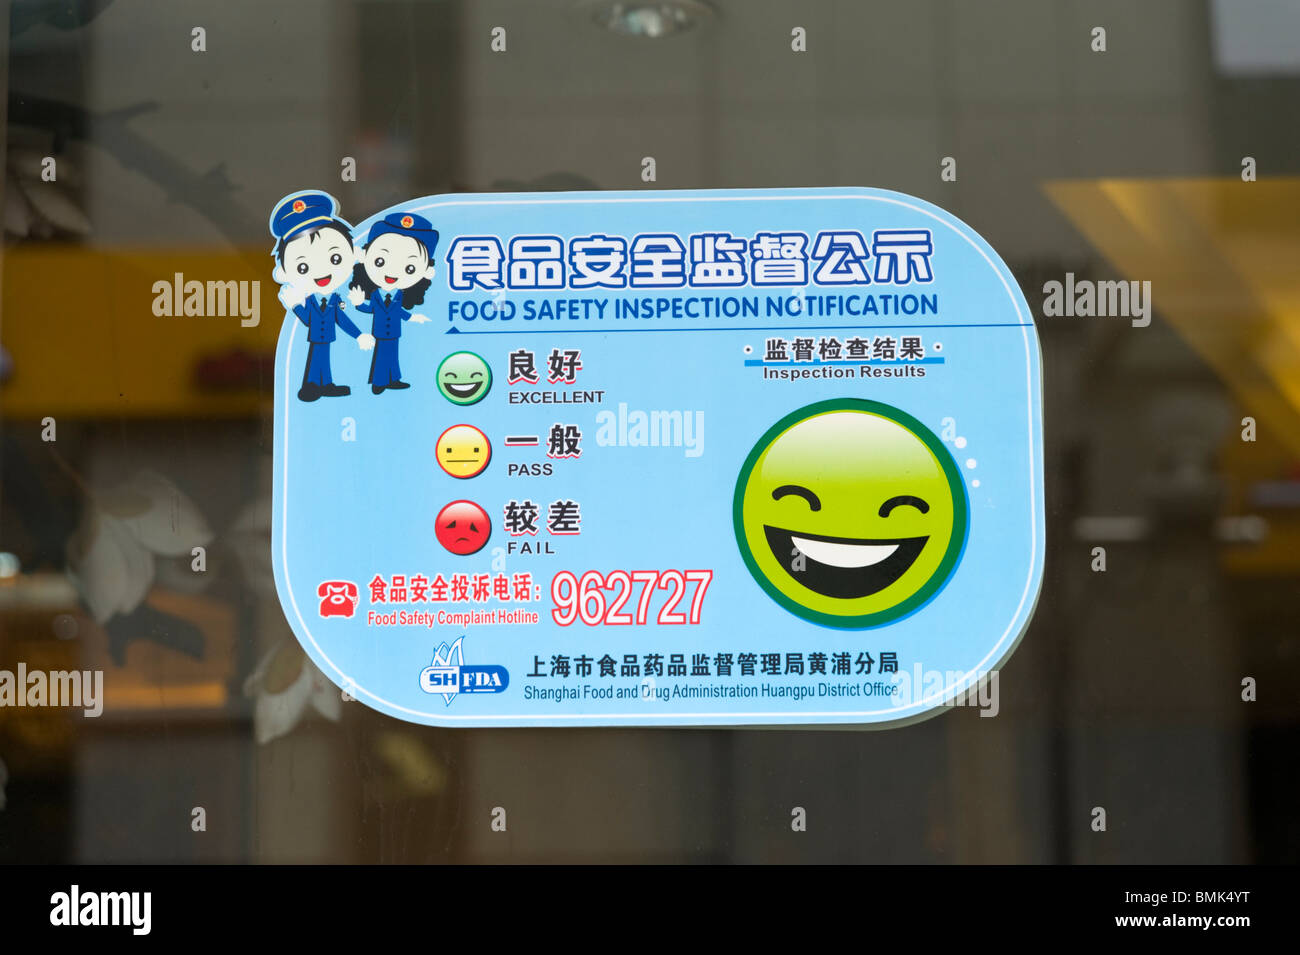 Certificat d'inspection de sécurité alimentaire apparaît dans la fenêtre d'un restaurant, Shanghai, Chine Banque D'Images